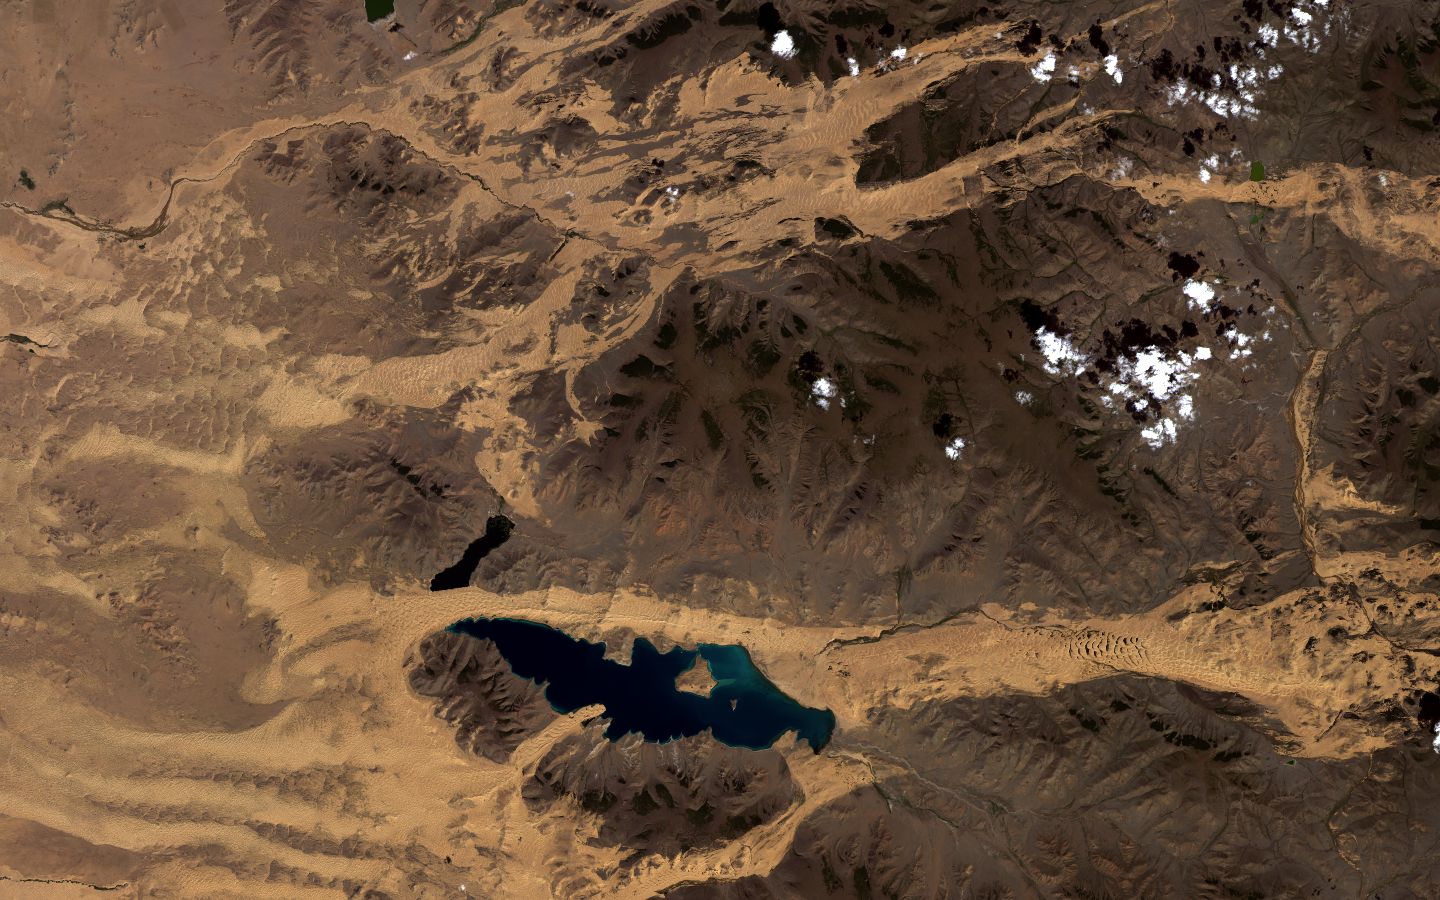 Ulaagchiin Khar Lake, Mongolia